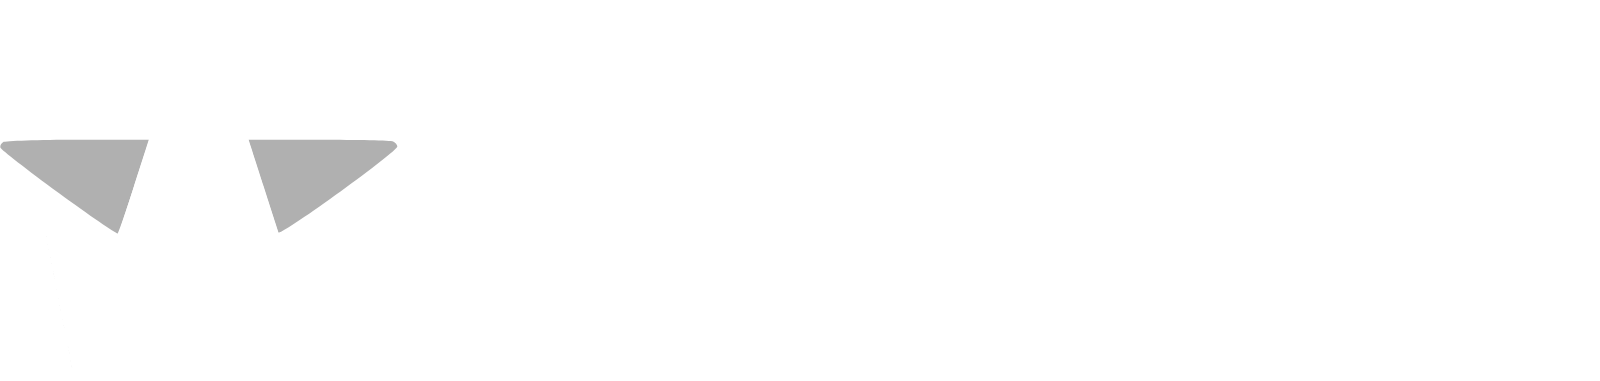 Astra Space Logo groß für dunkle Hintergründe (transparentes PNG)